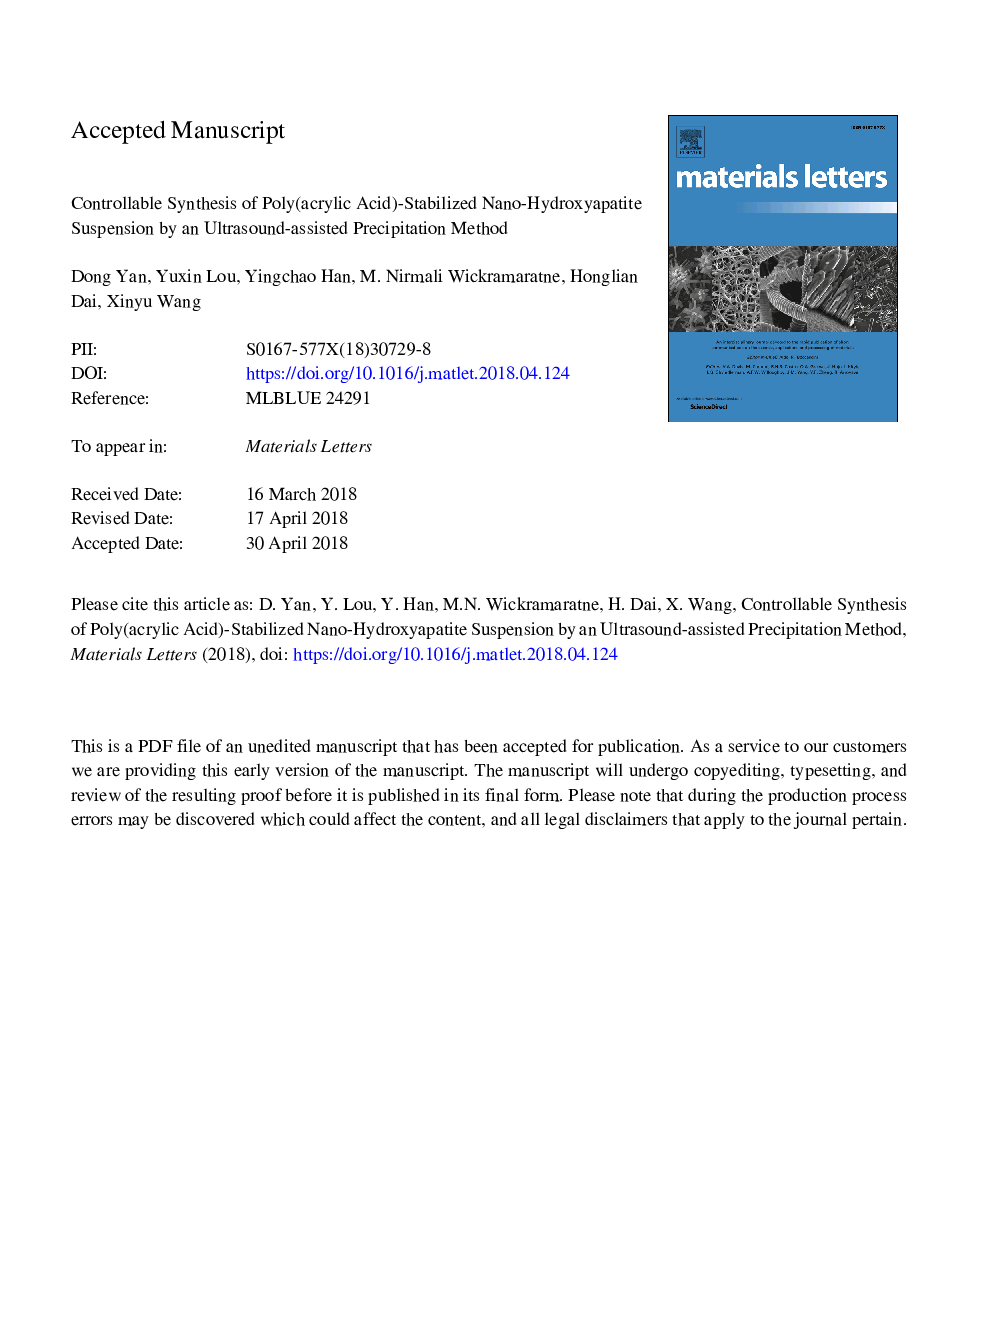 سنتز کنترل شده از تعلیق نانو هیدروکسی آپاتیت پاک شده پلی (آکریلیک اسید) با استفاده از روش بارش فراوانی با استفاده از سونوگرافی 